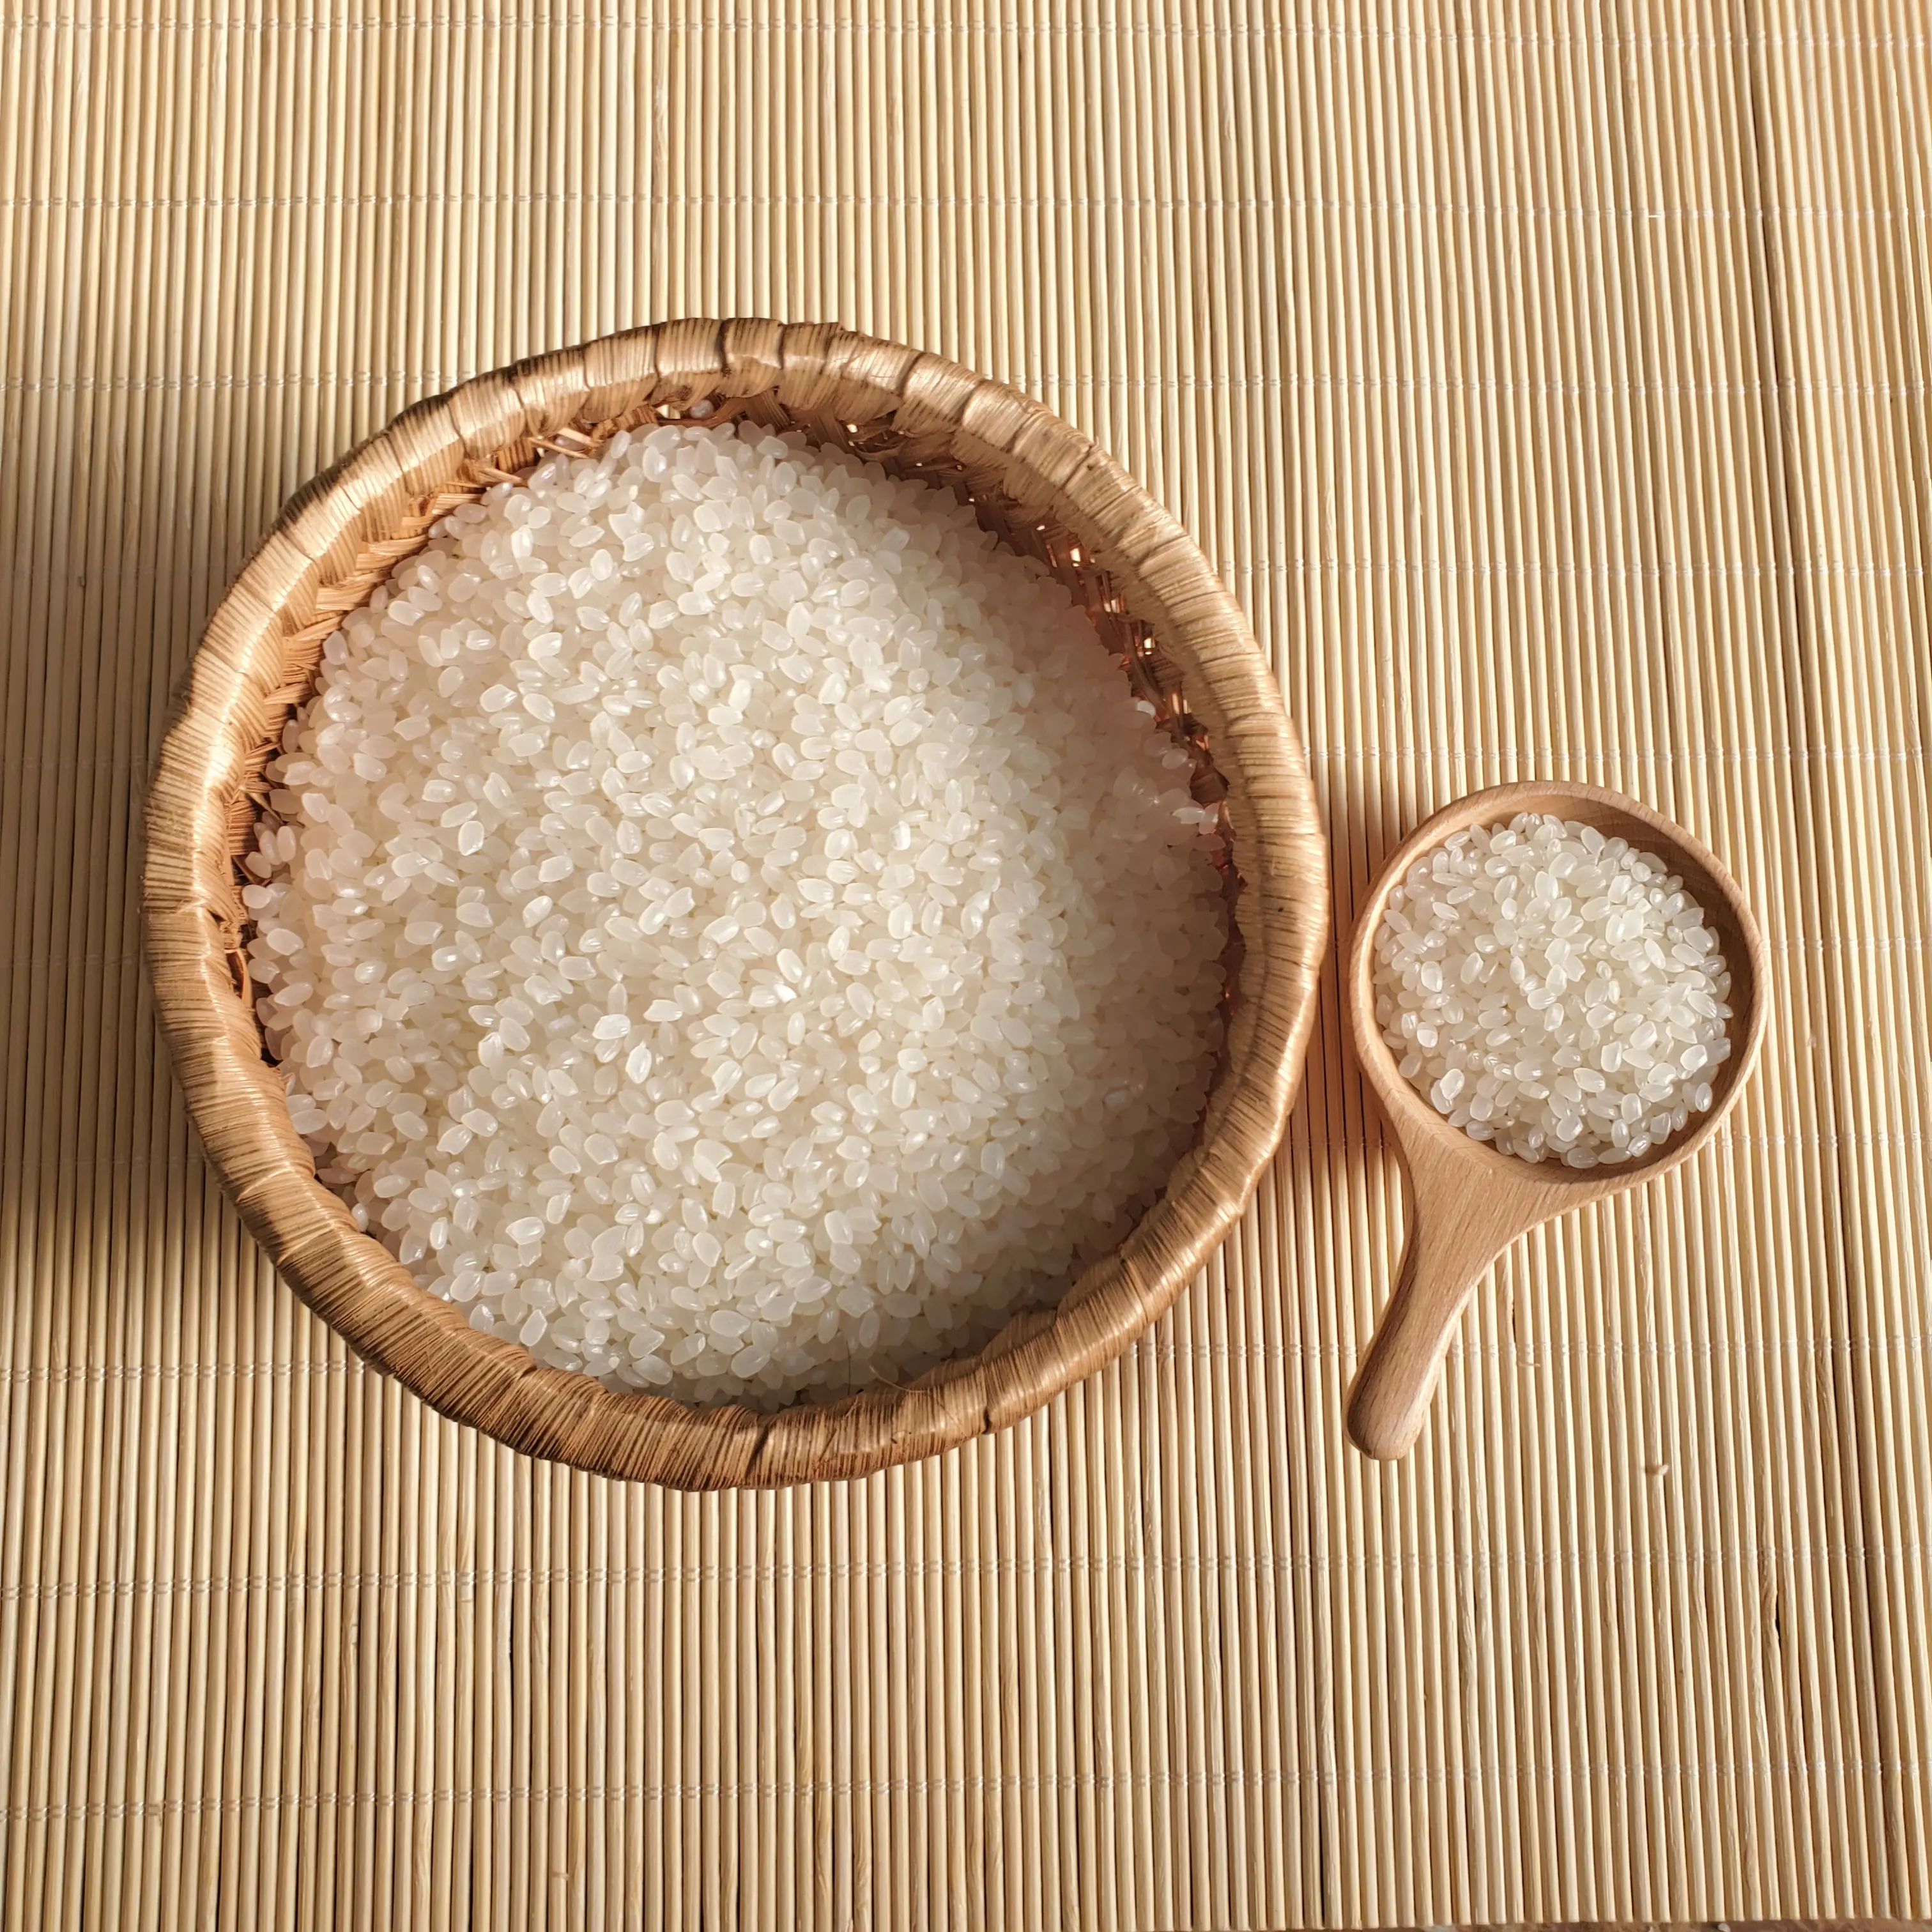 Bán buôn Gạo Japonica/5% gạo tròn bị hỏng đóng gói 10kg/20kg...-WhatsApp: 84 358211696 (MS. Iris)